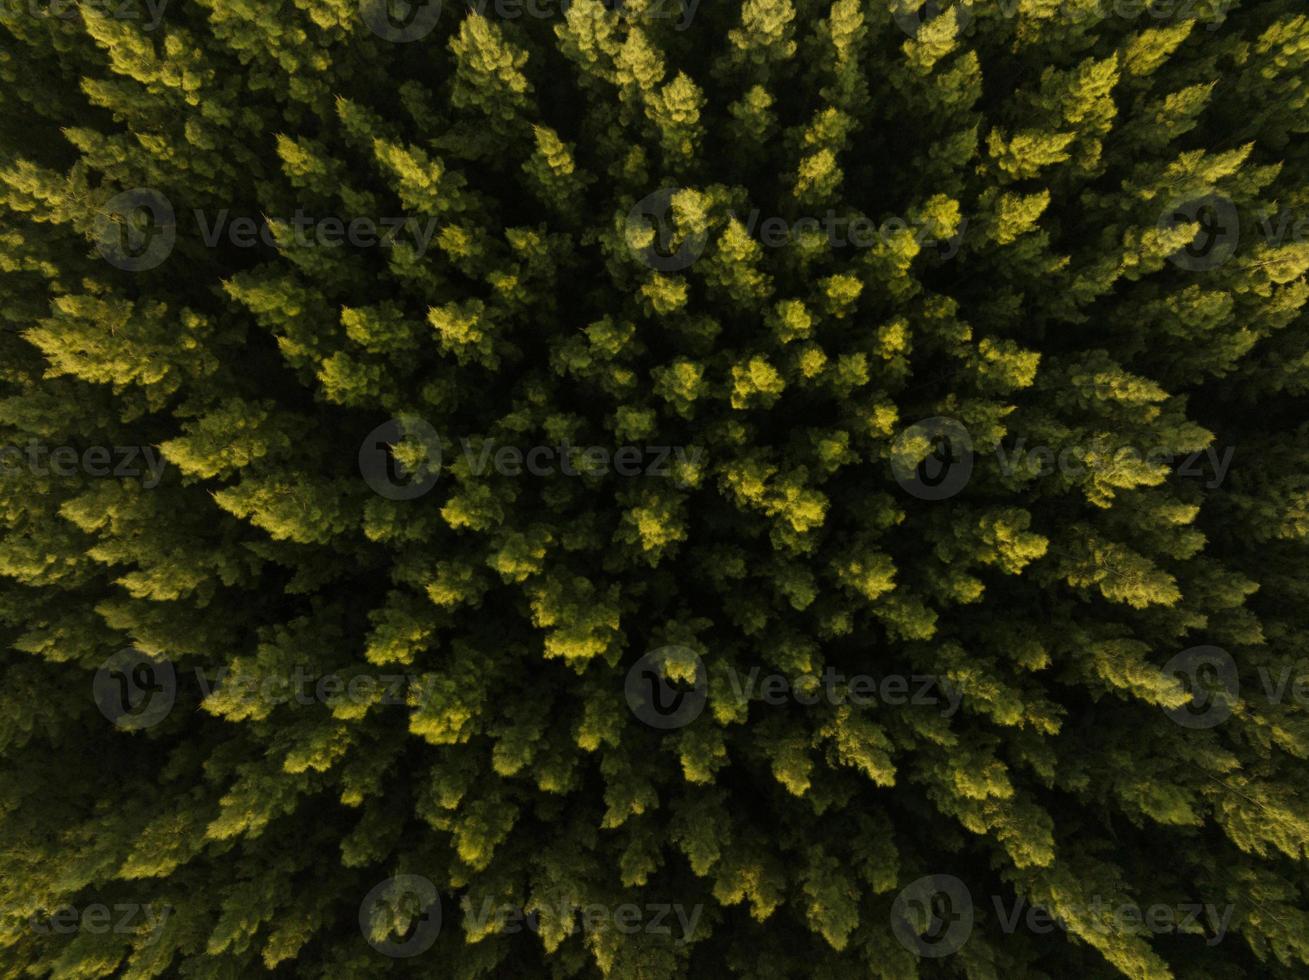 une vue aérienne de dessus d'arbres verts dans une forêt de pins avec une scène de coucher de soleil photo